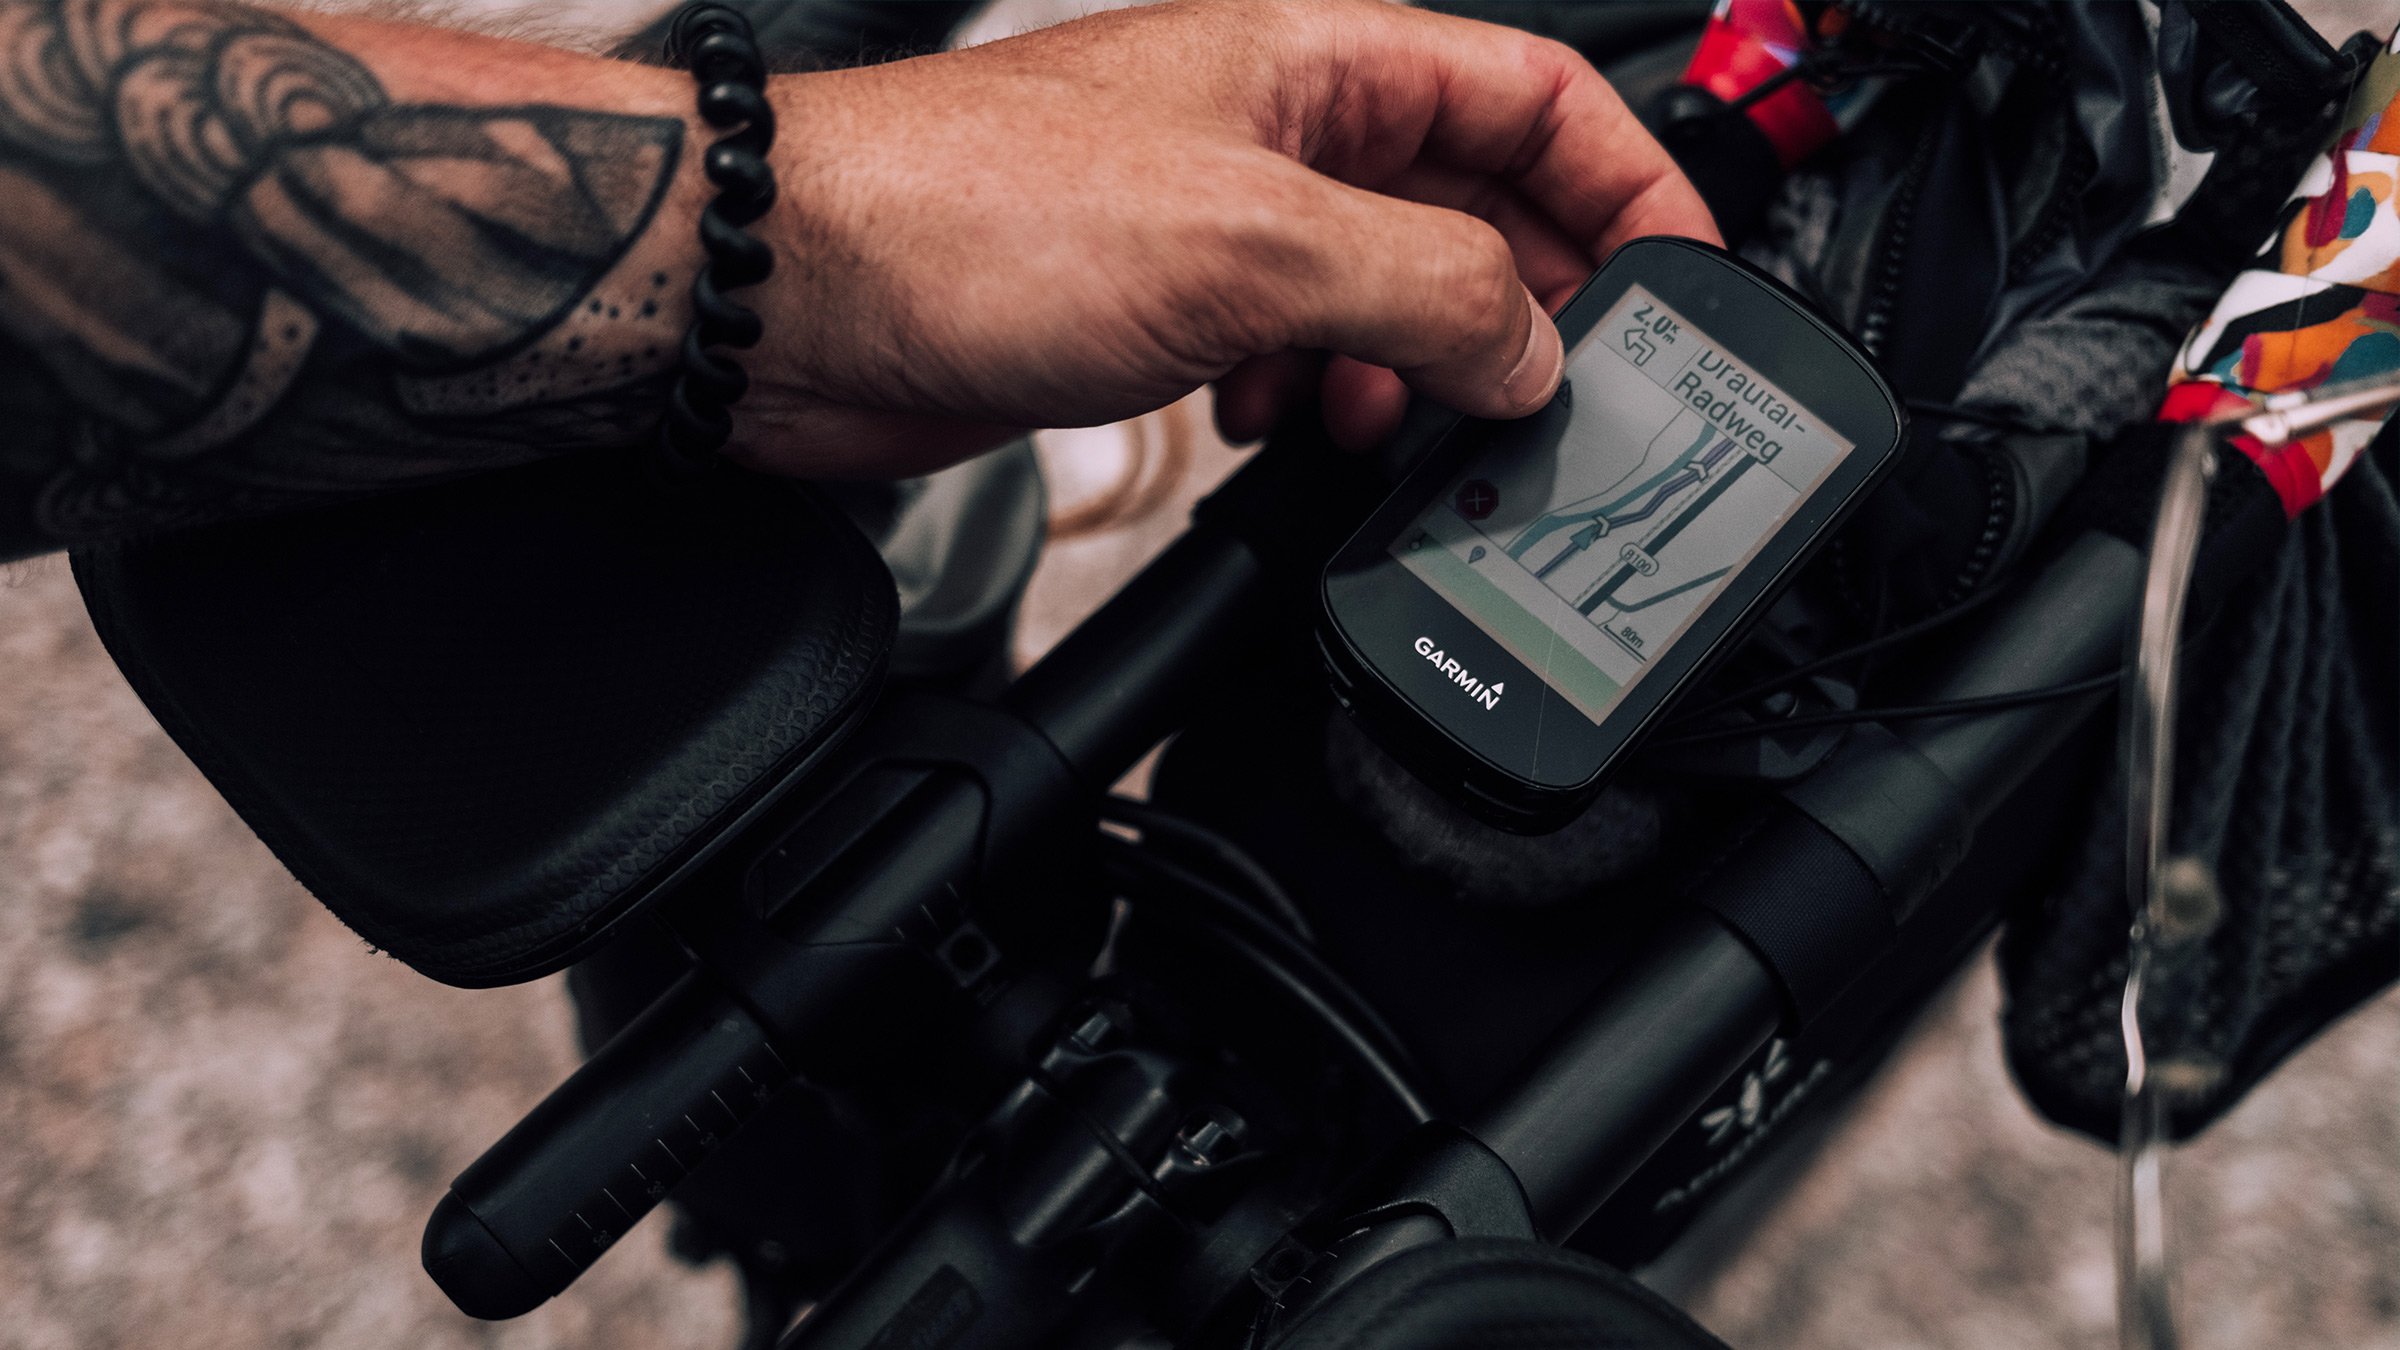 Edge 830 Owners Manual - Instalar el soporte para bicicleta de montaña